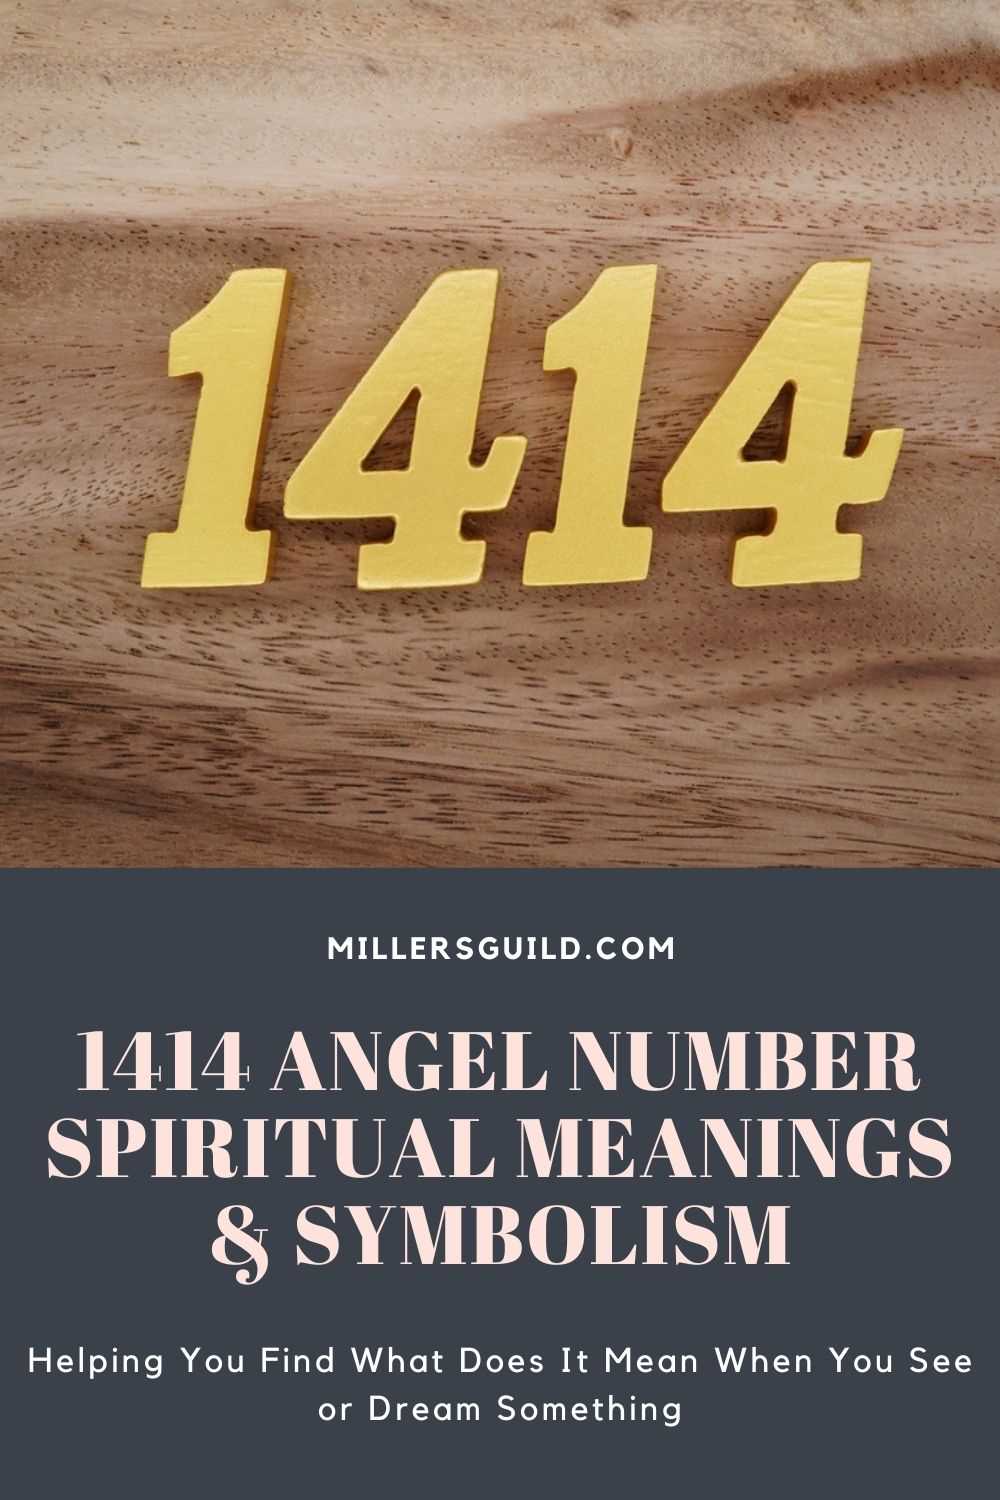 Godzina 14 14 jako sygnał do zwrócenia uwagi na duchowe aspekty życia